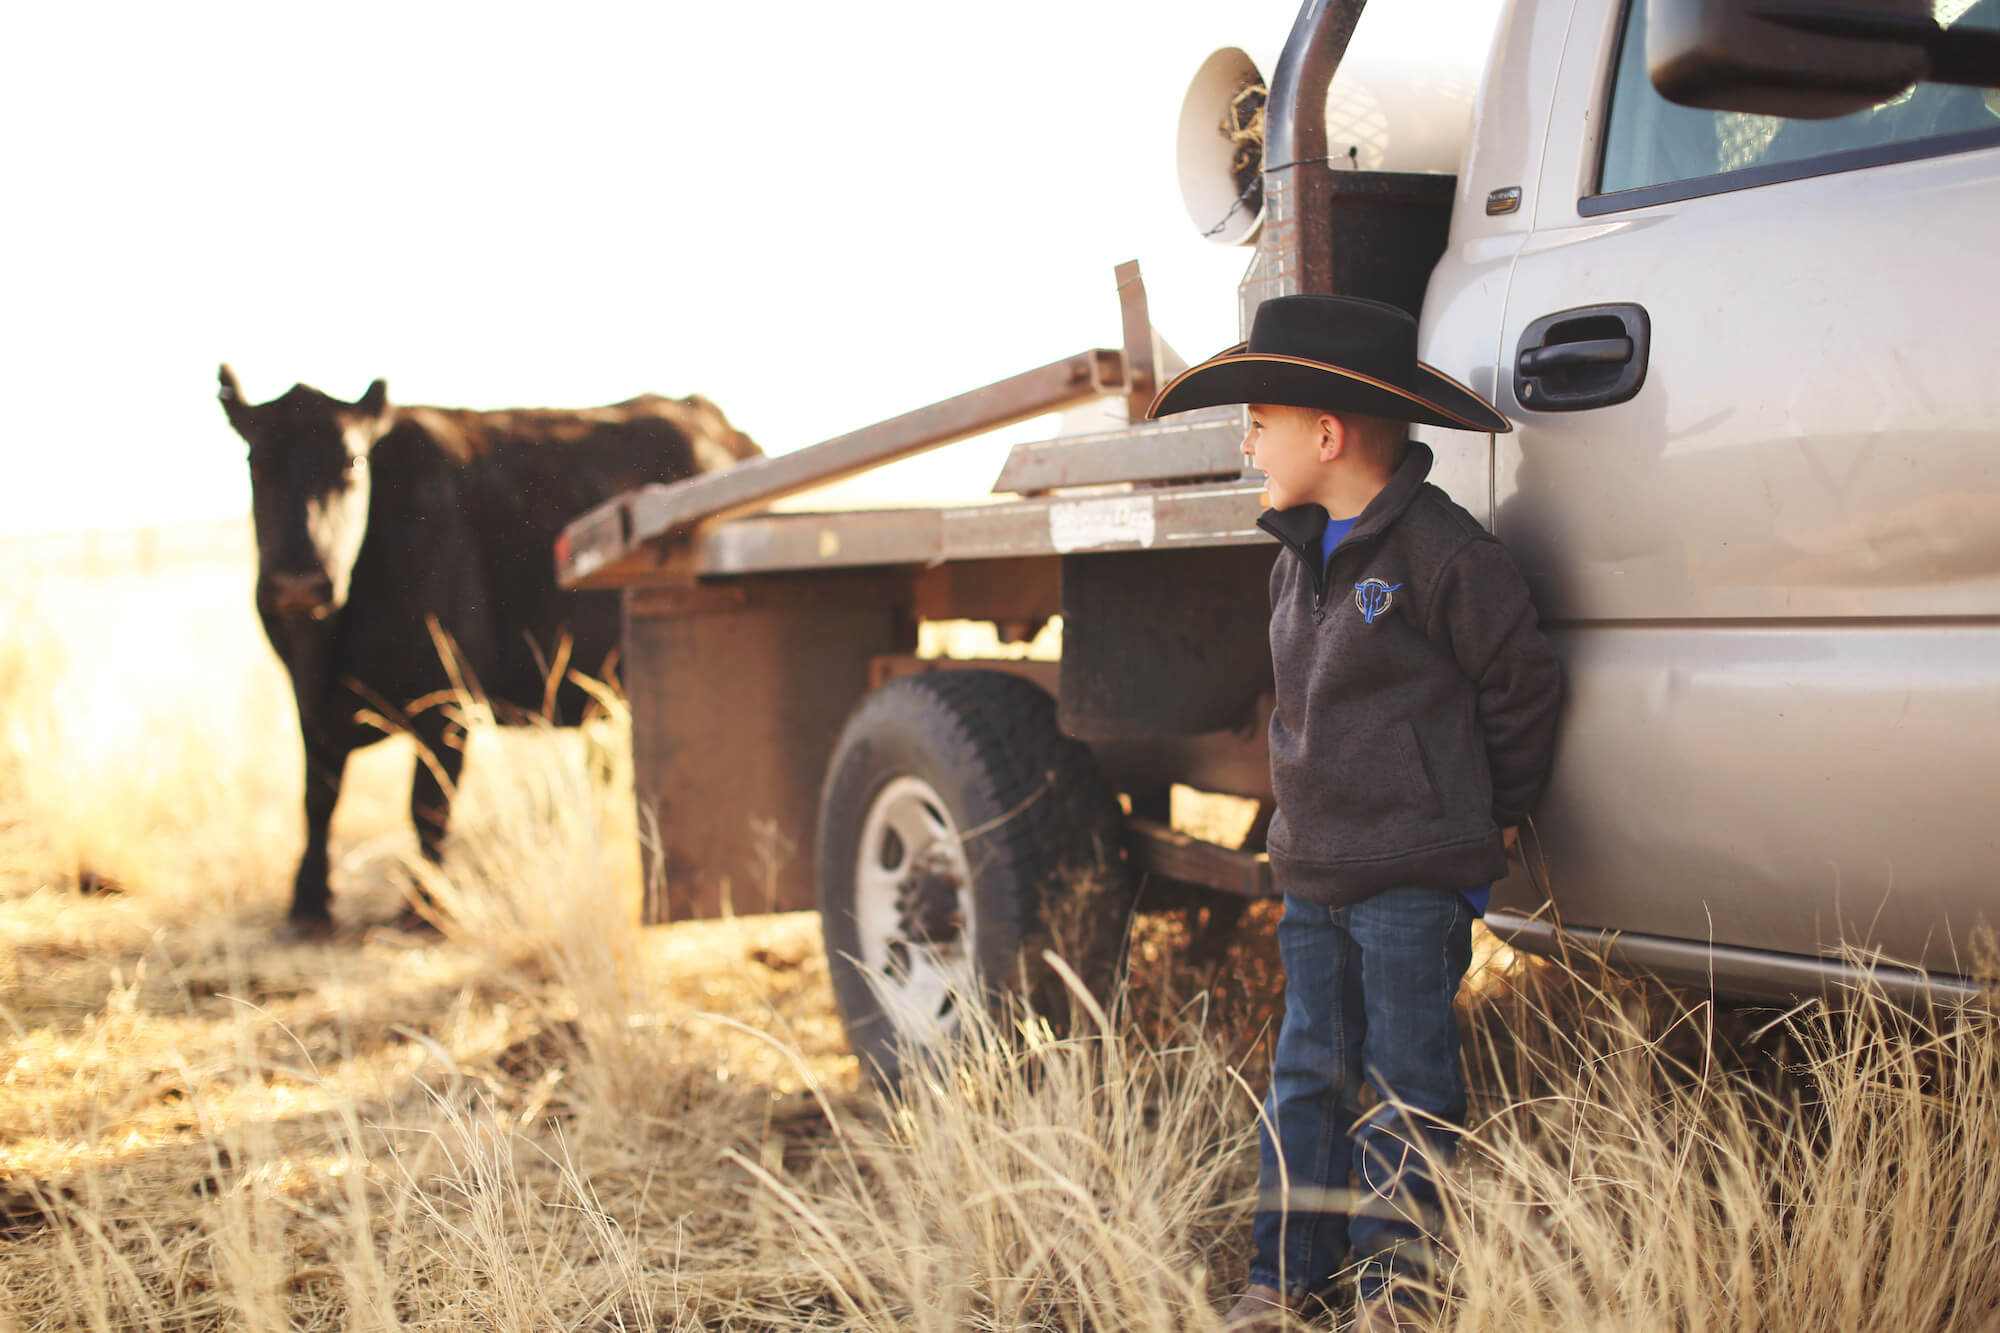 Boy wearing wester wear standing by truck